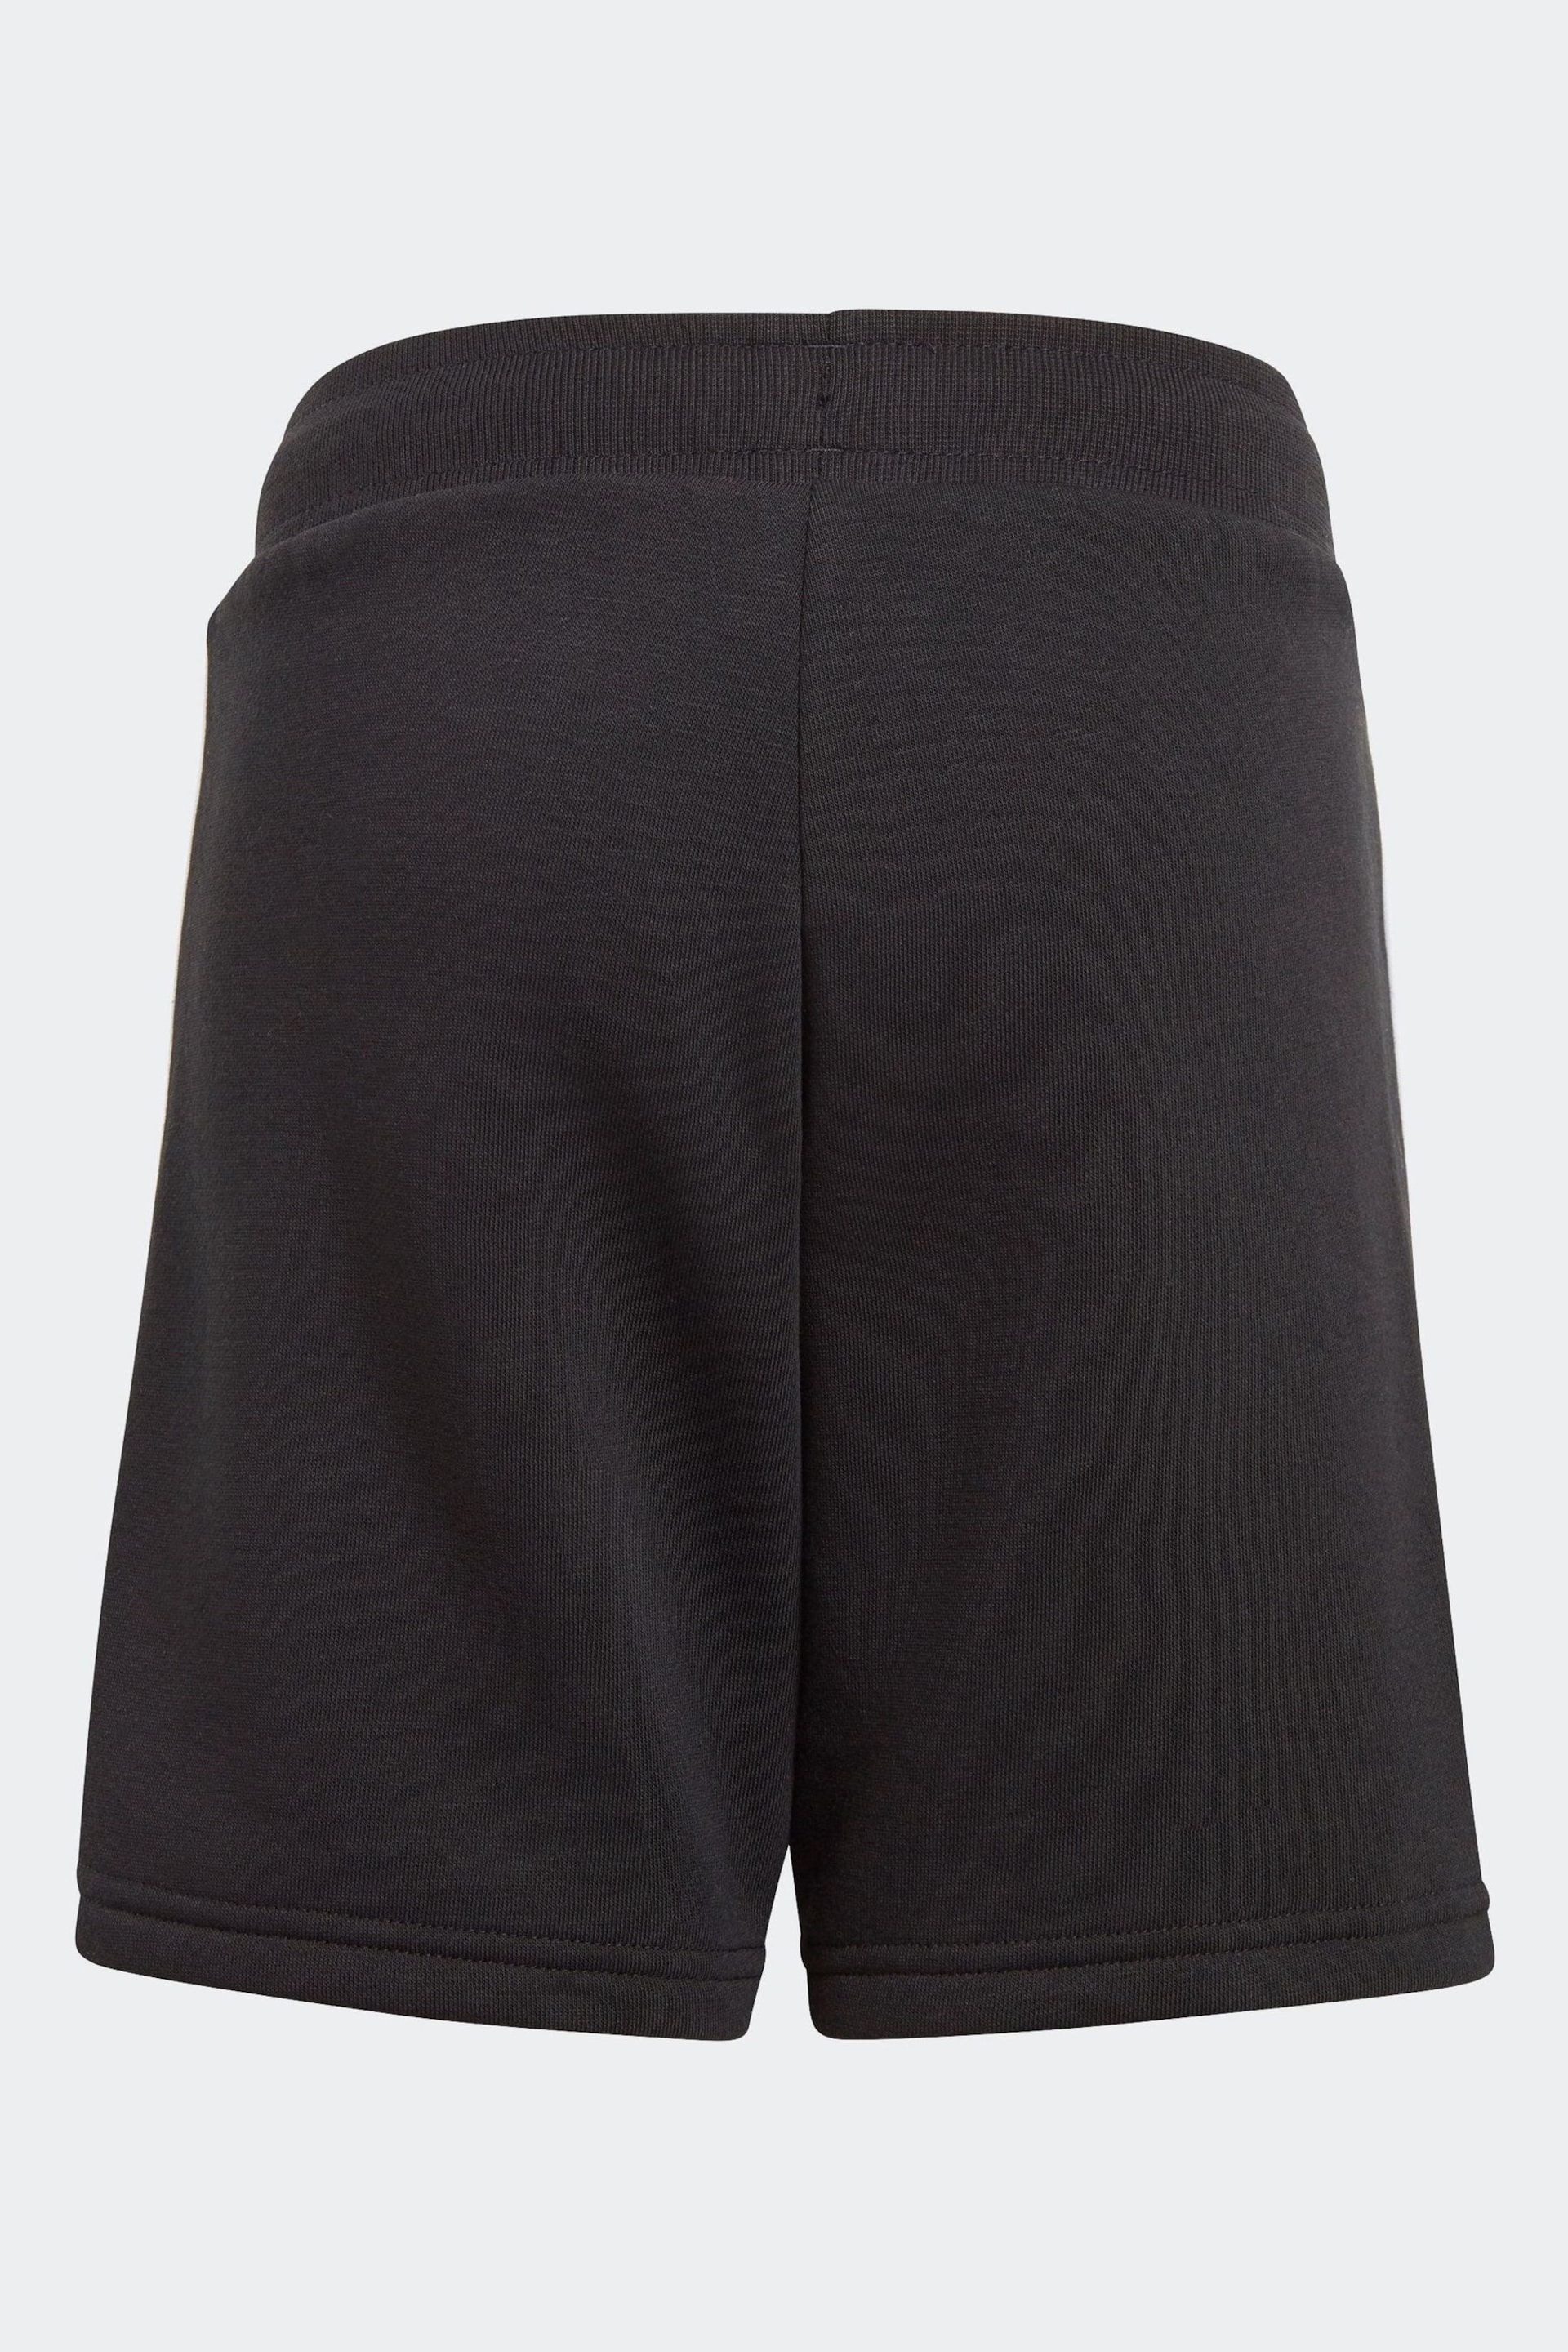 adidas Originals Adicolor T-Shirt and Shorts Set - Image 4 of 7